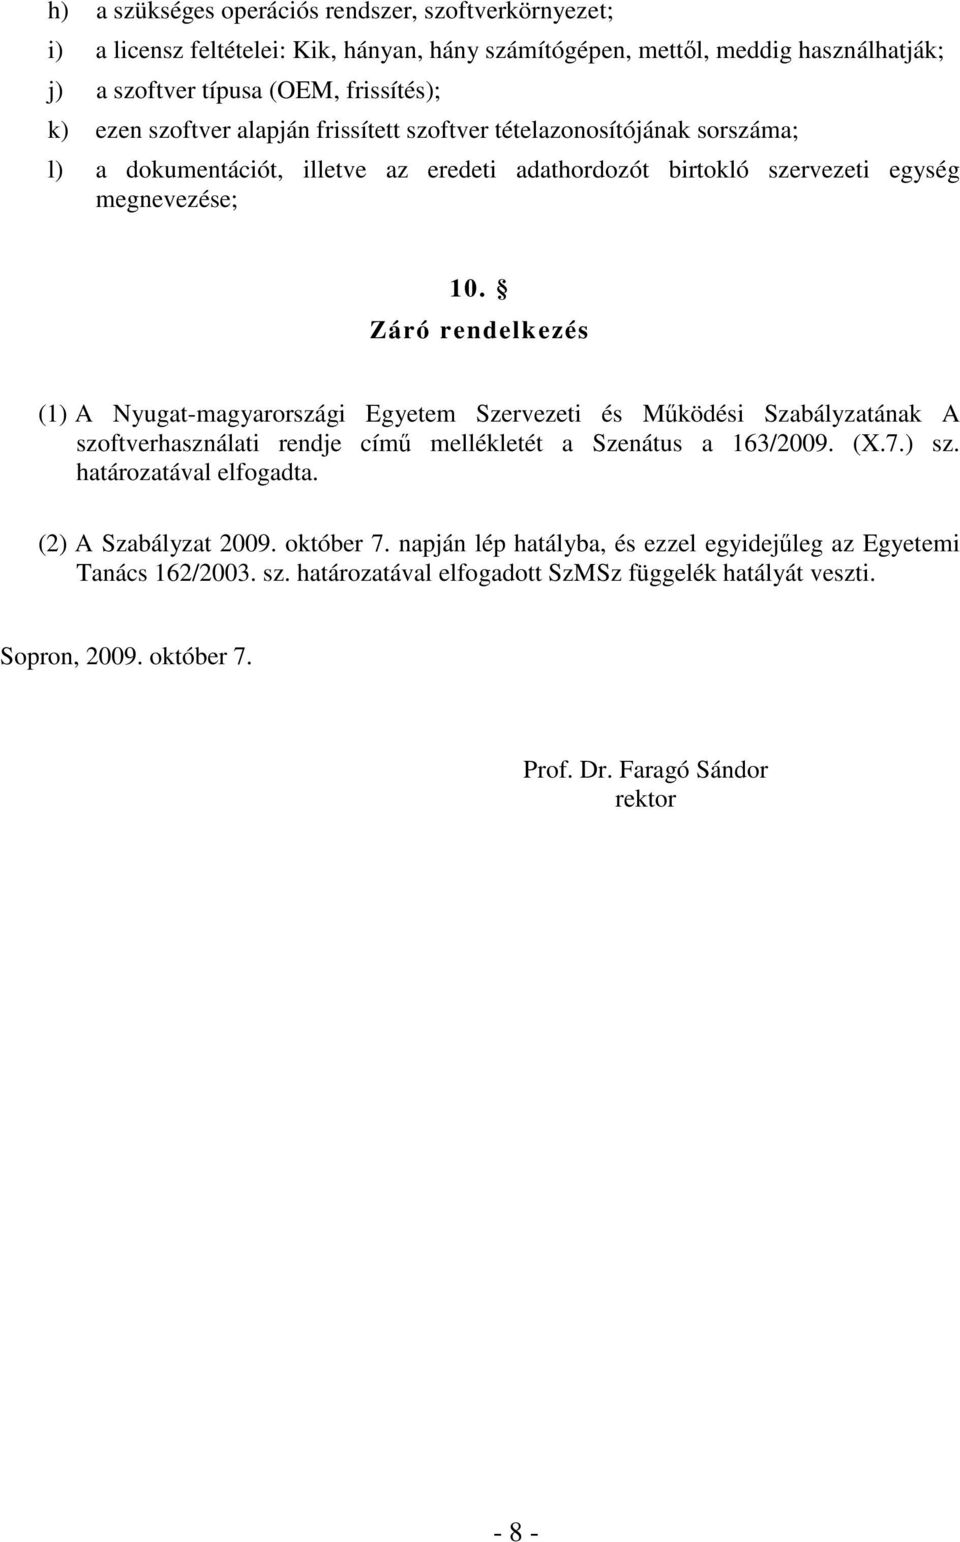 Záró rendelkezés (1) A Nyugat-magyarországi Egyetem Szervezeti és Mködési Szabályzatának A szoftverhasználati rendje cím mellékletét a Szenátus a 163/2009. (X.7.) sz. határozatával elfogadta.